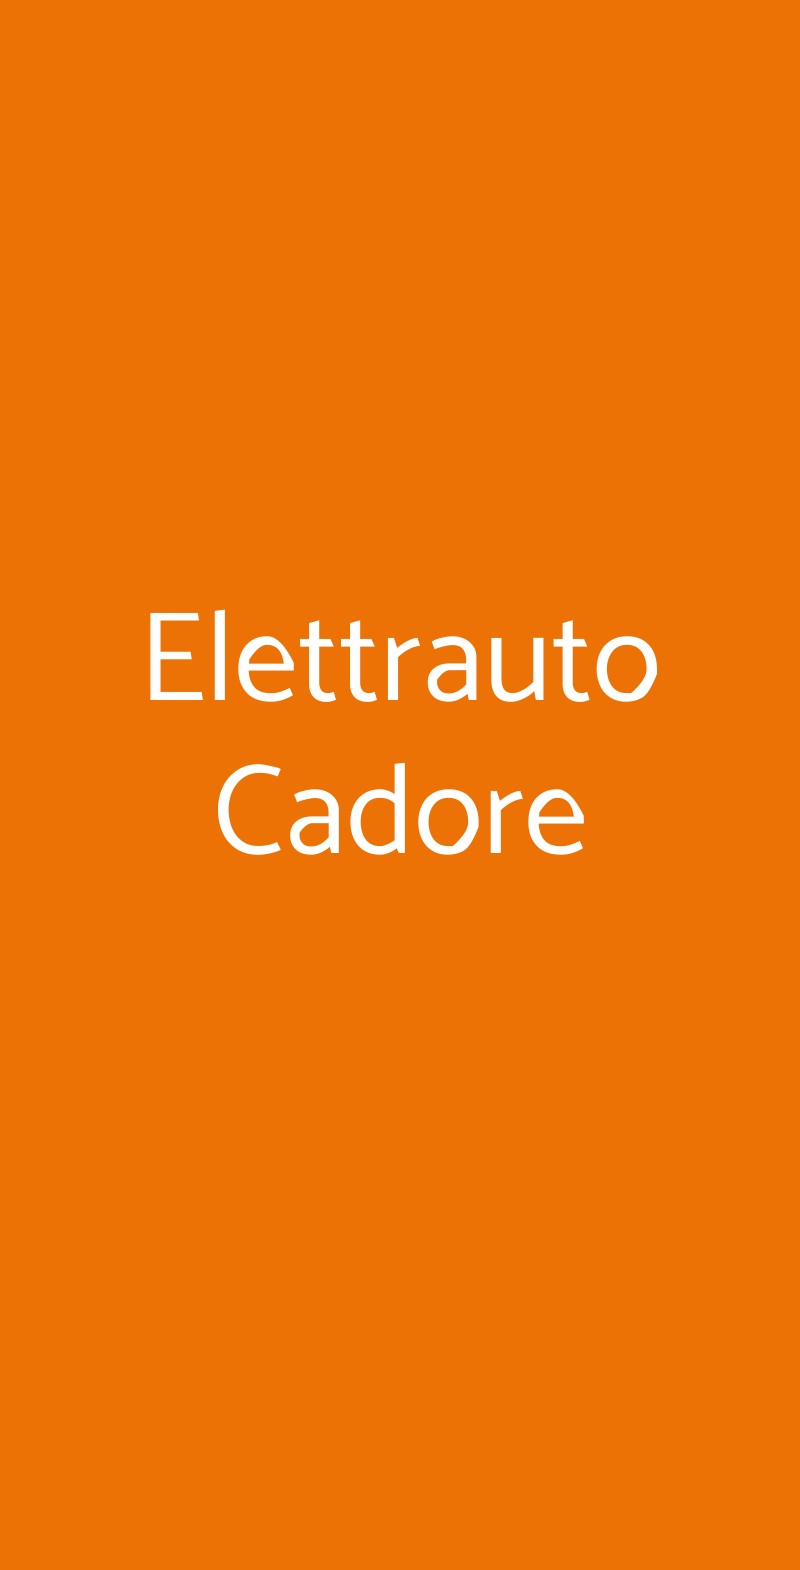 Elettrauto Cadore Milano menù 1 pagina